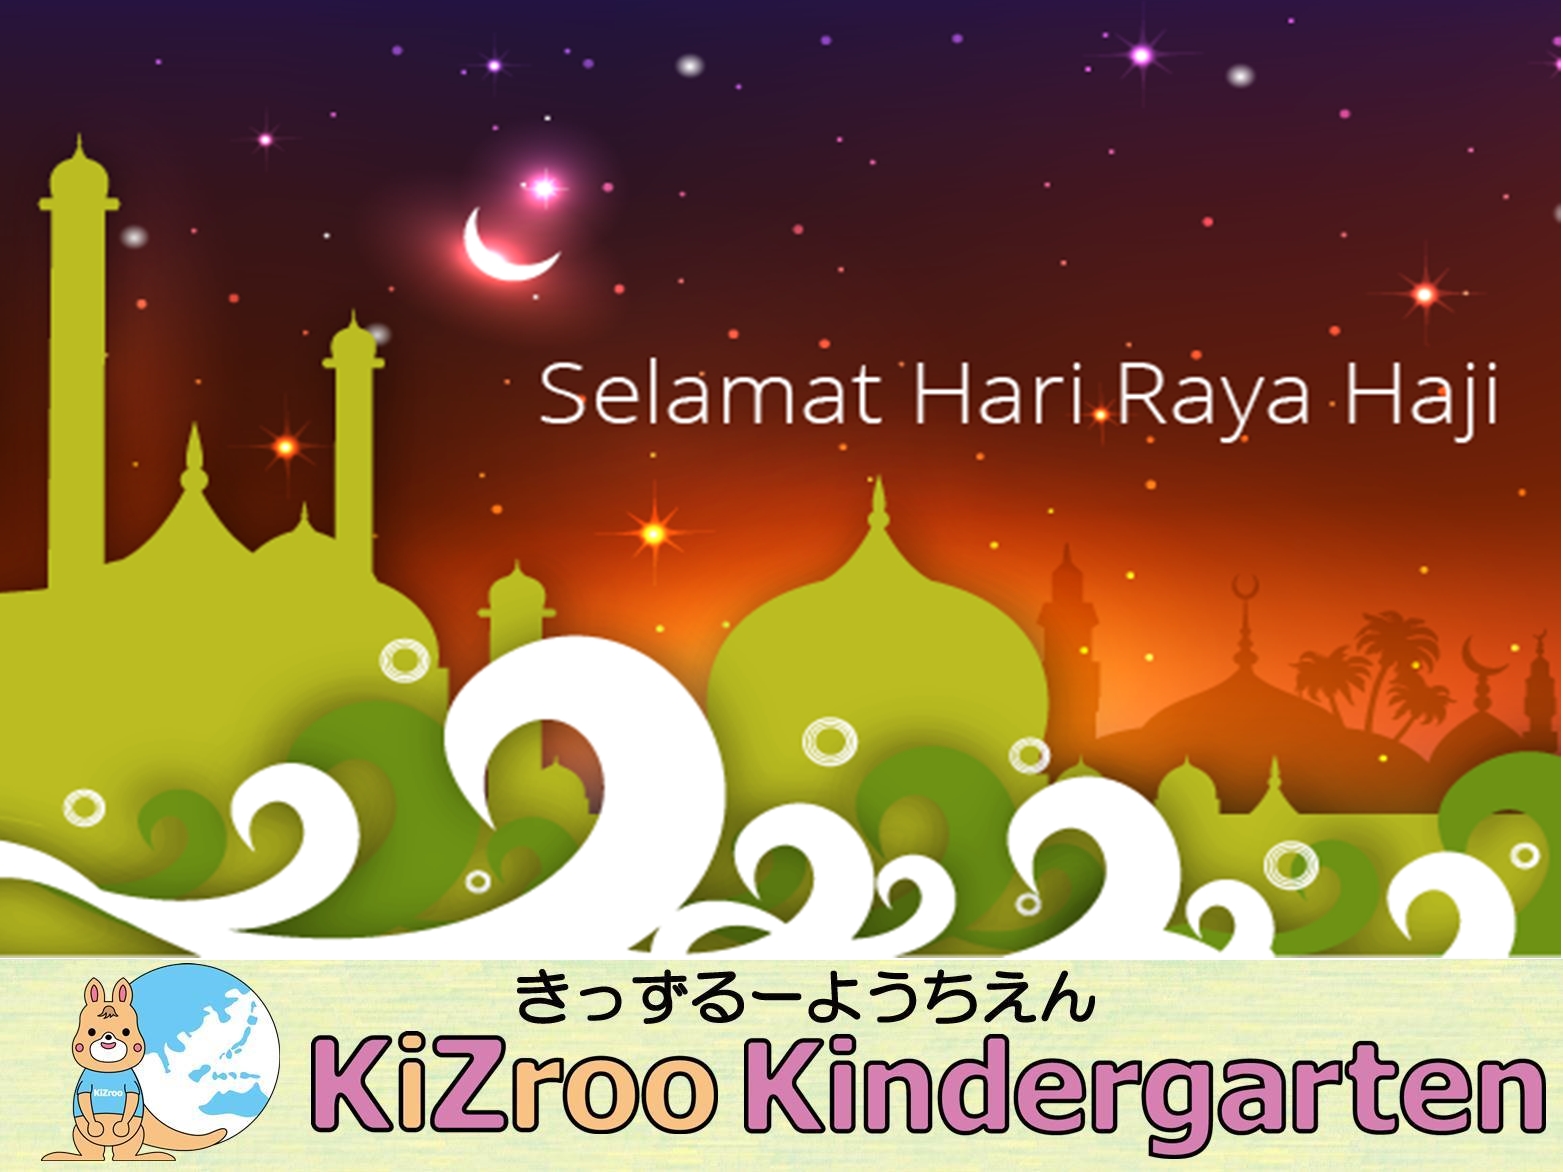  KiZroo Kindergarten  Selamat  Hari  Raya  Haji  